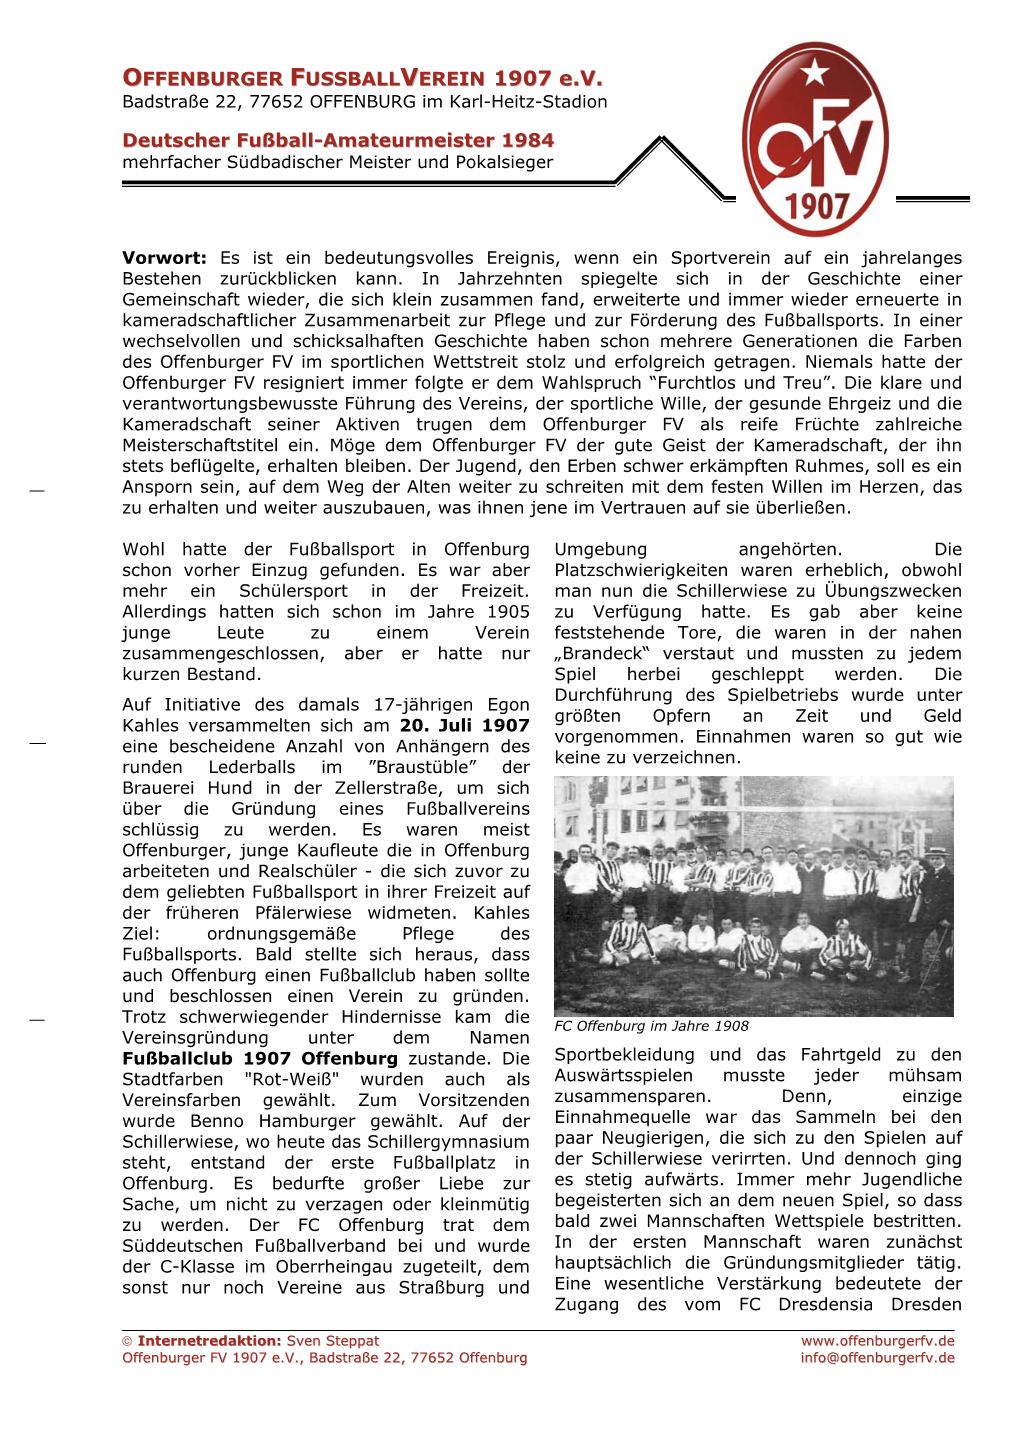 Die OFV-Vereinsgeschichte Von 1907 Bis Heute